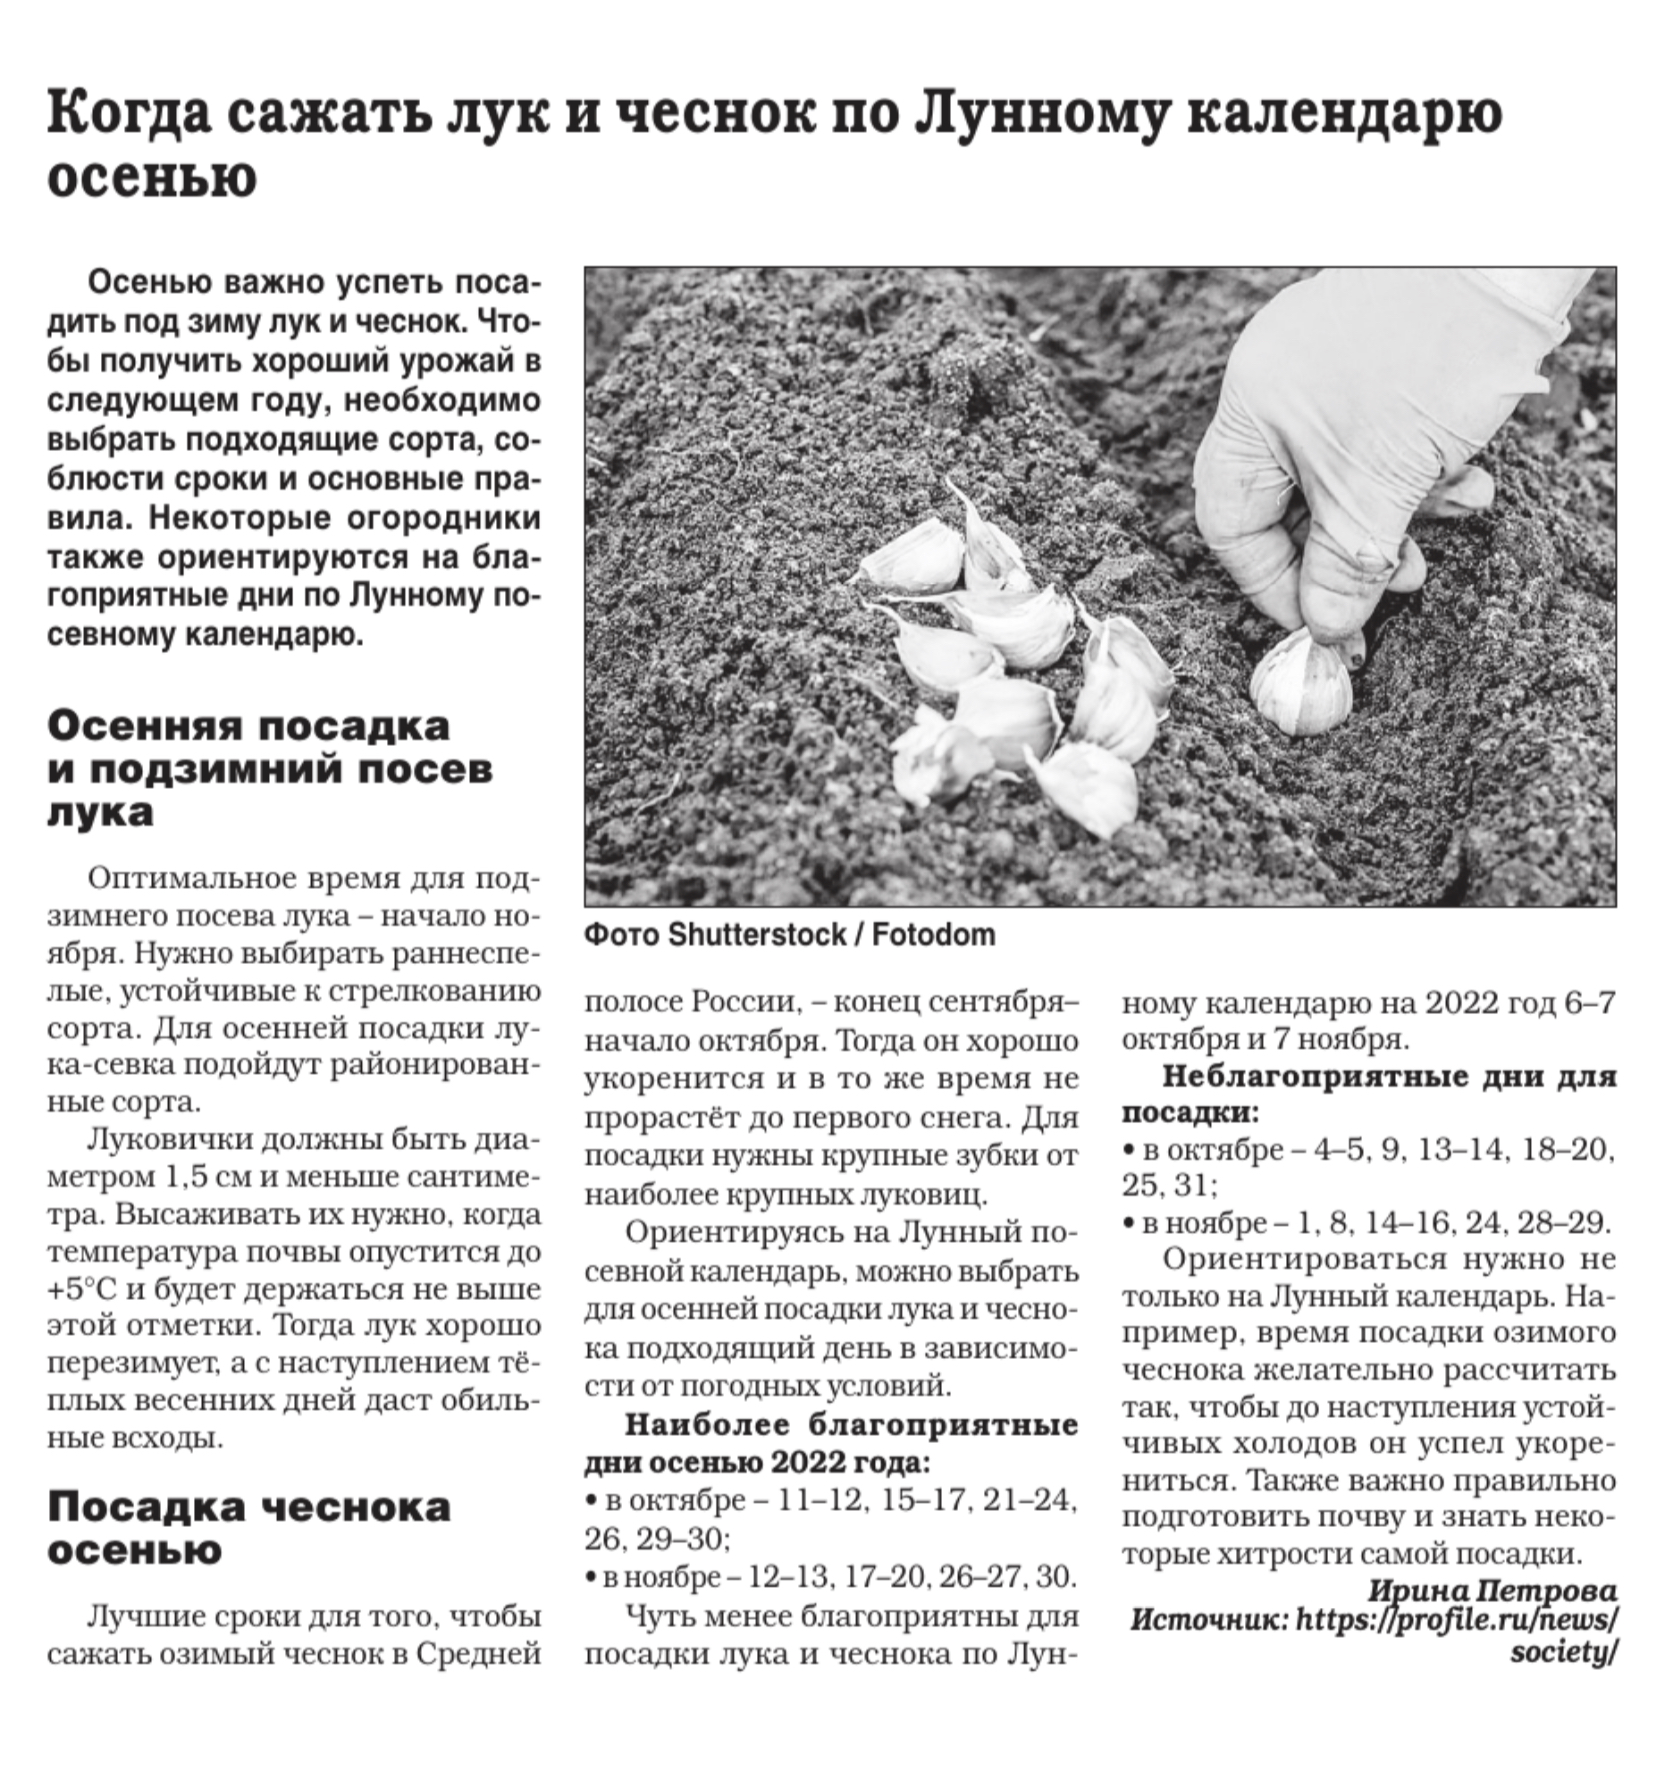 Когда сажать озимый чеснок в Иркутске и Иркутской области?